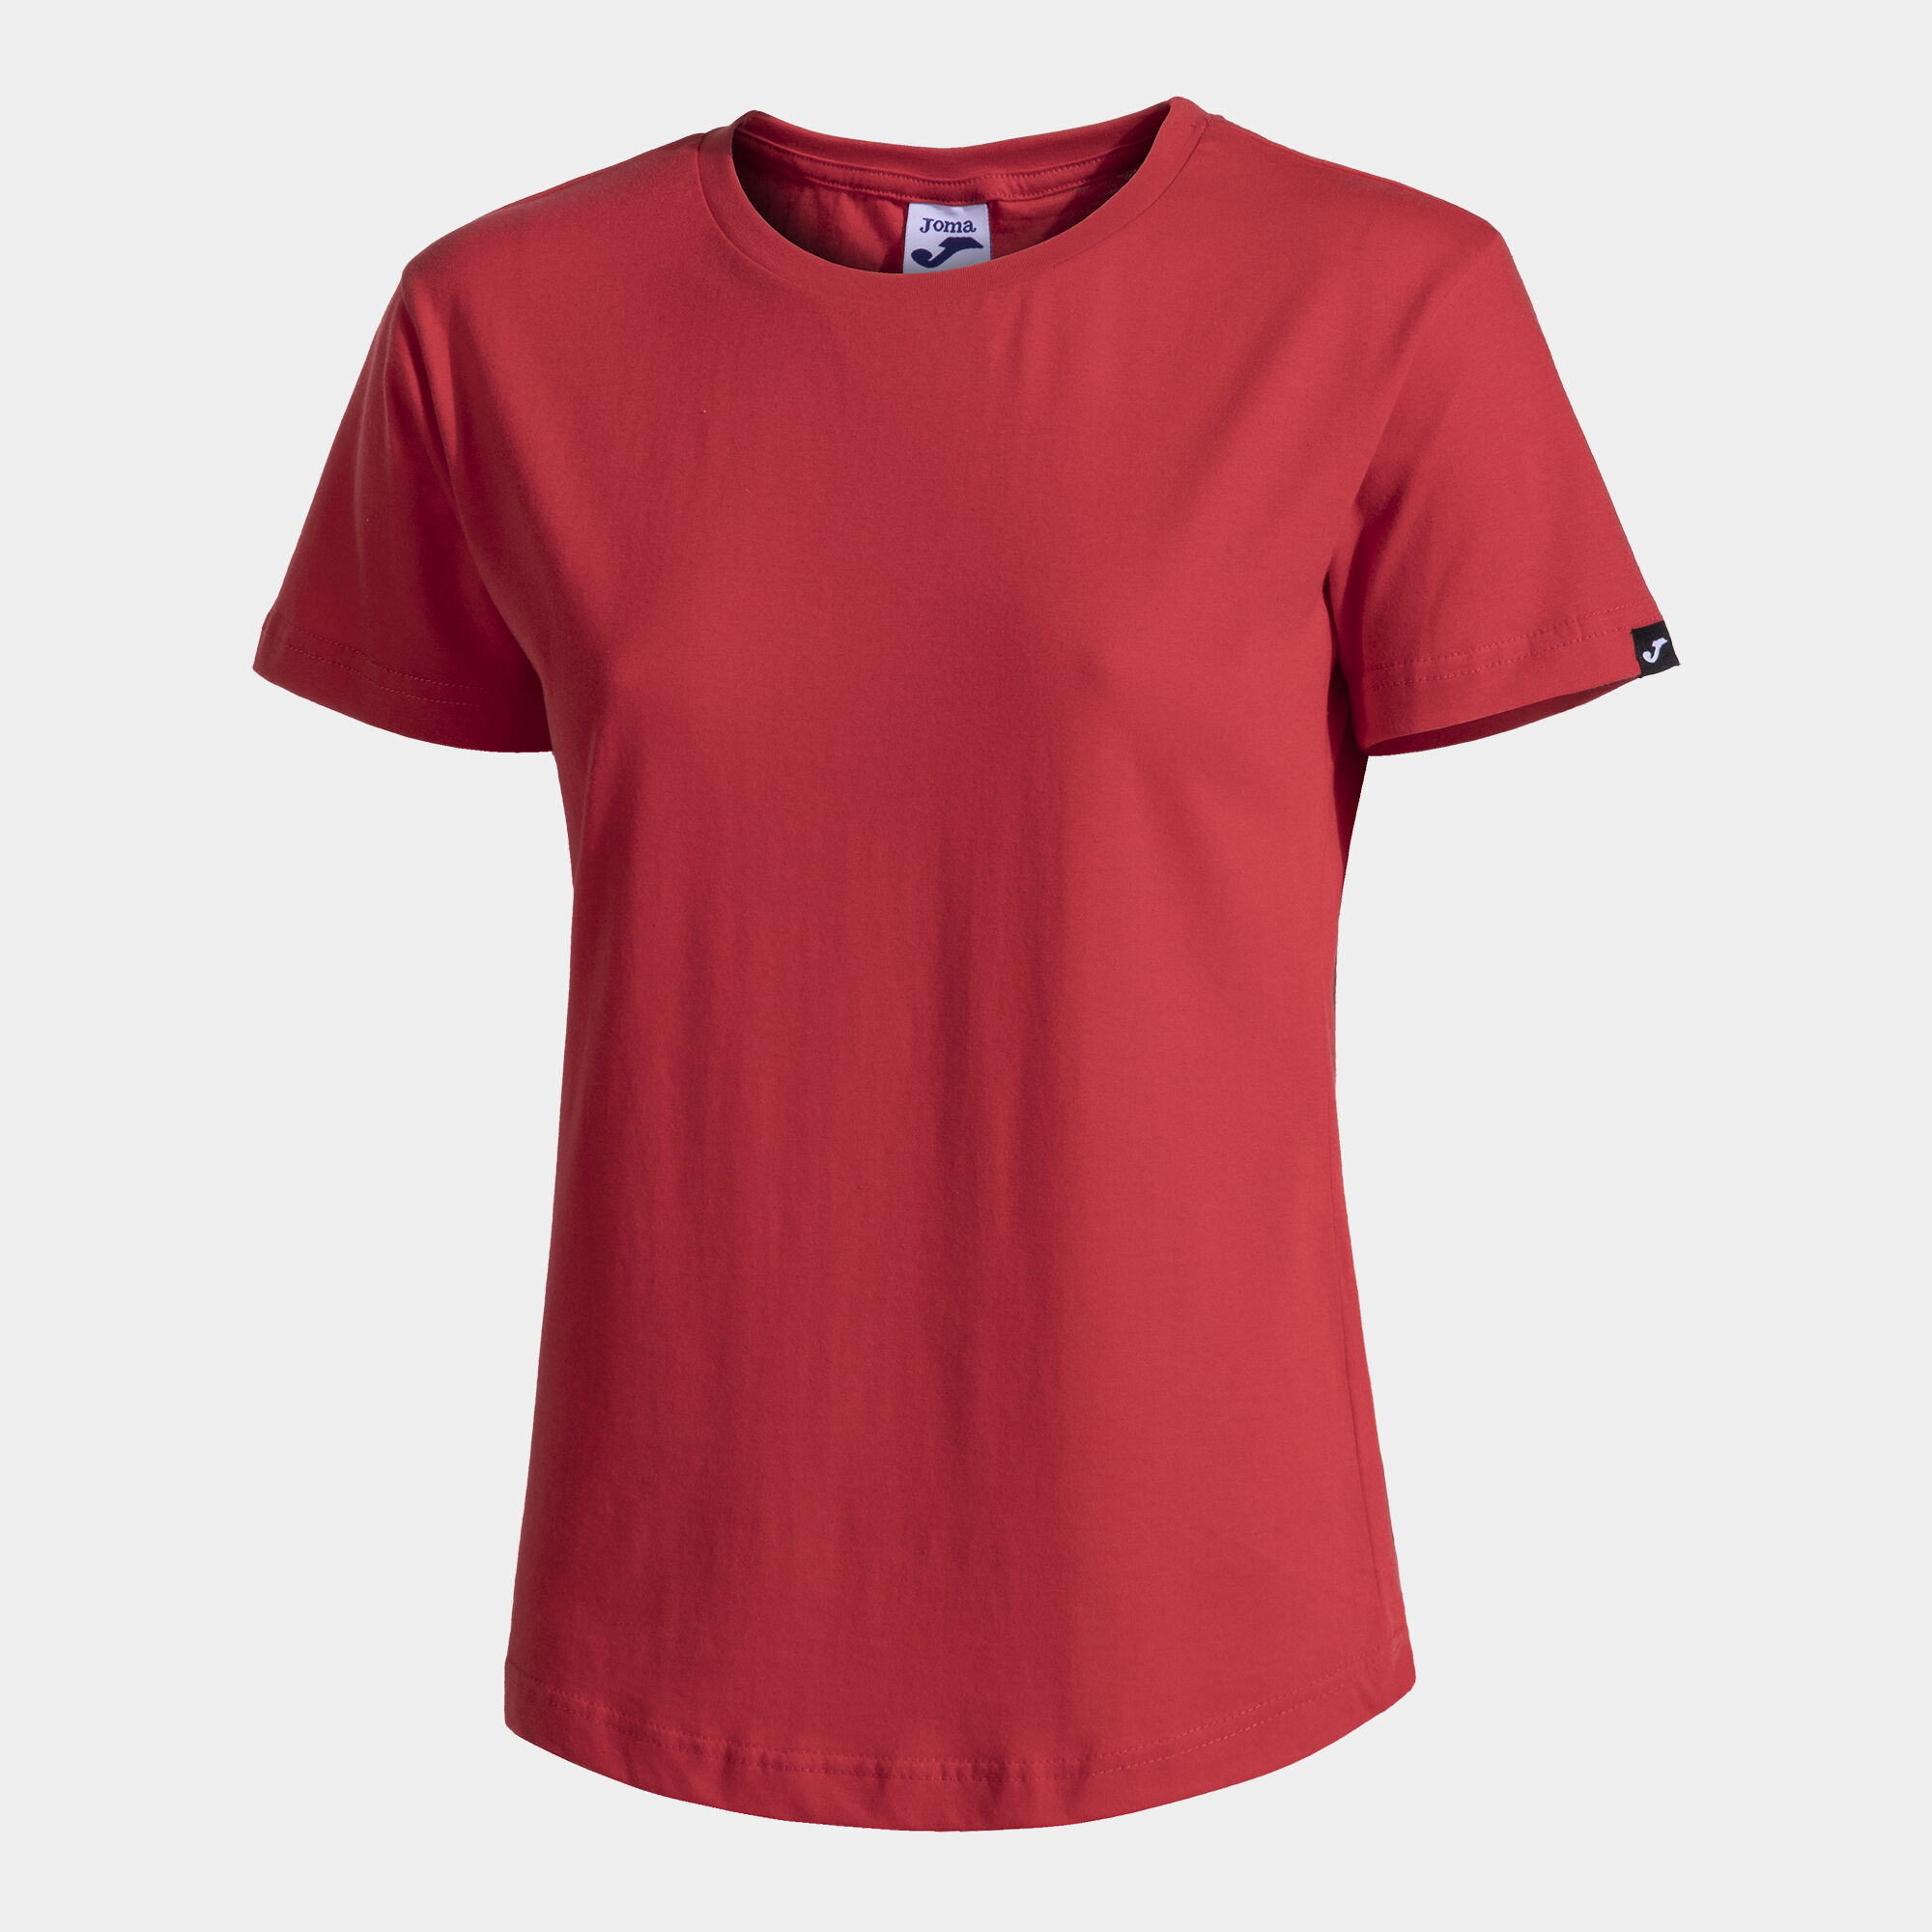 Shirt short sleeve woman Desert red